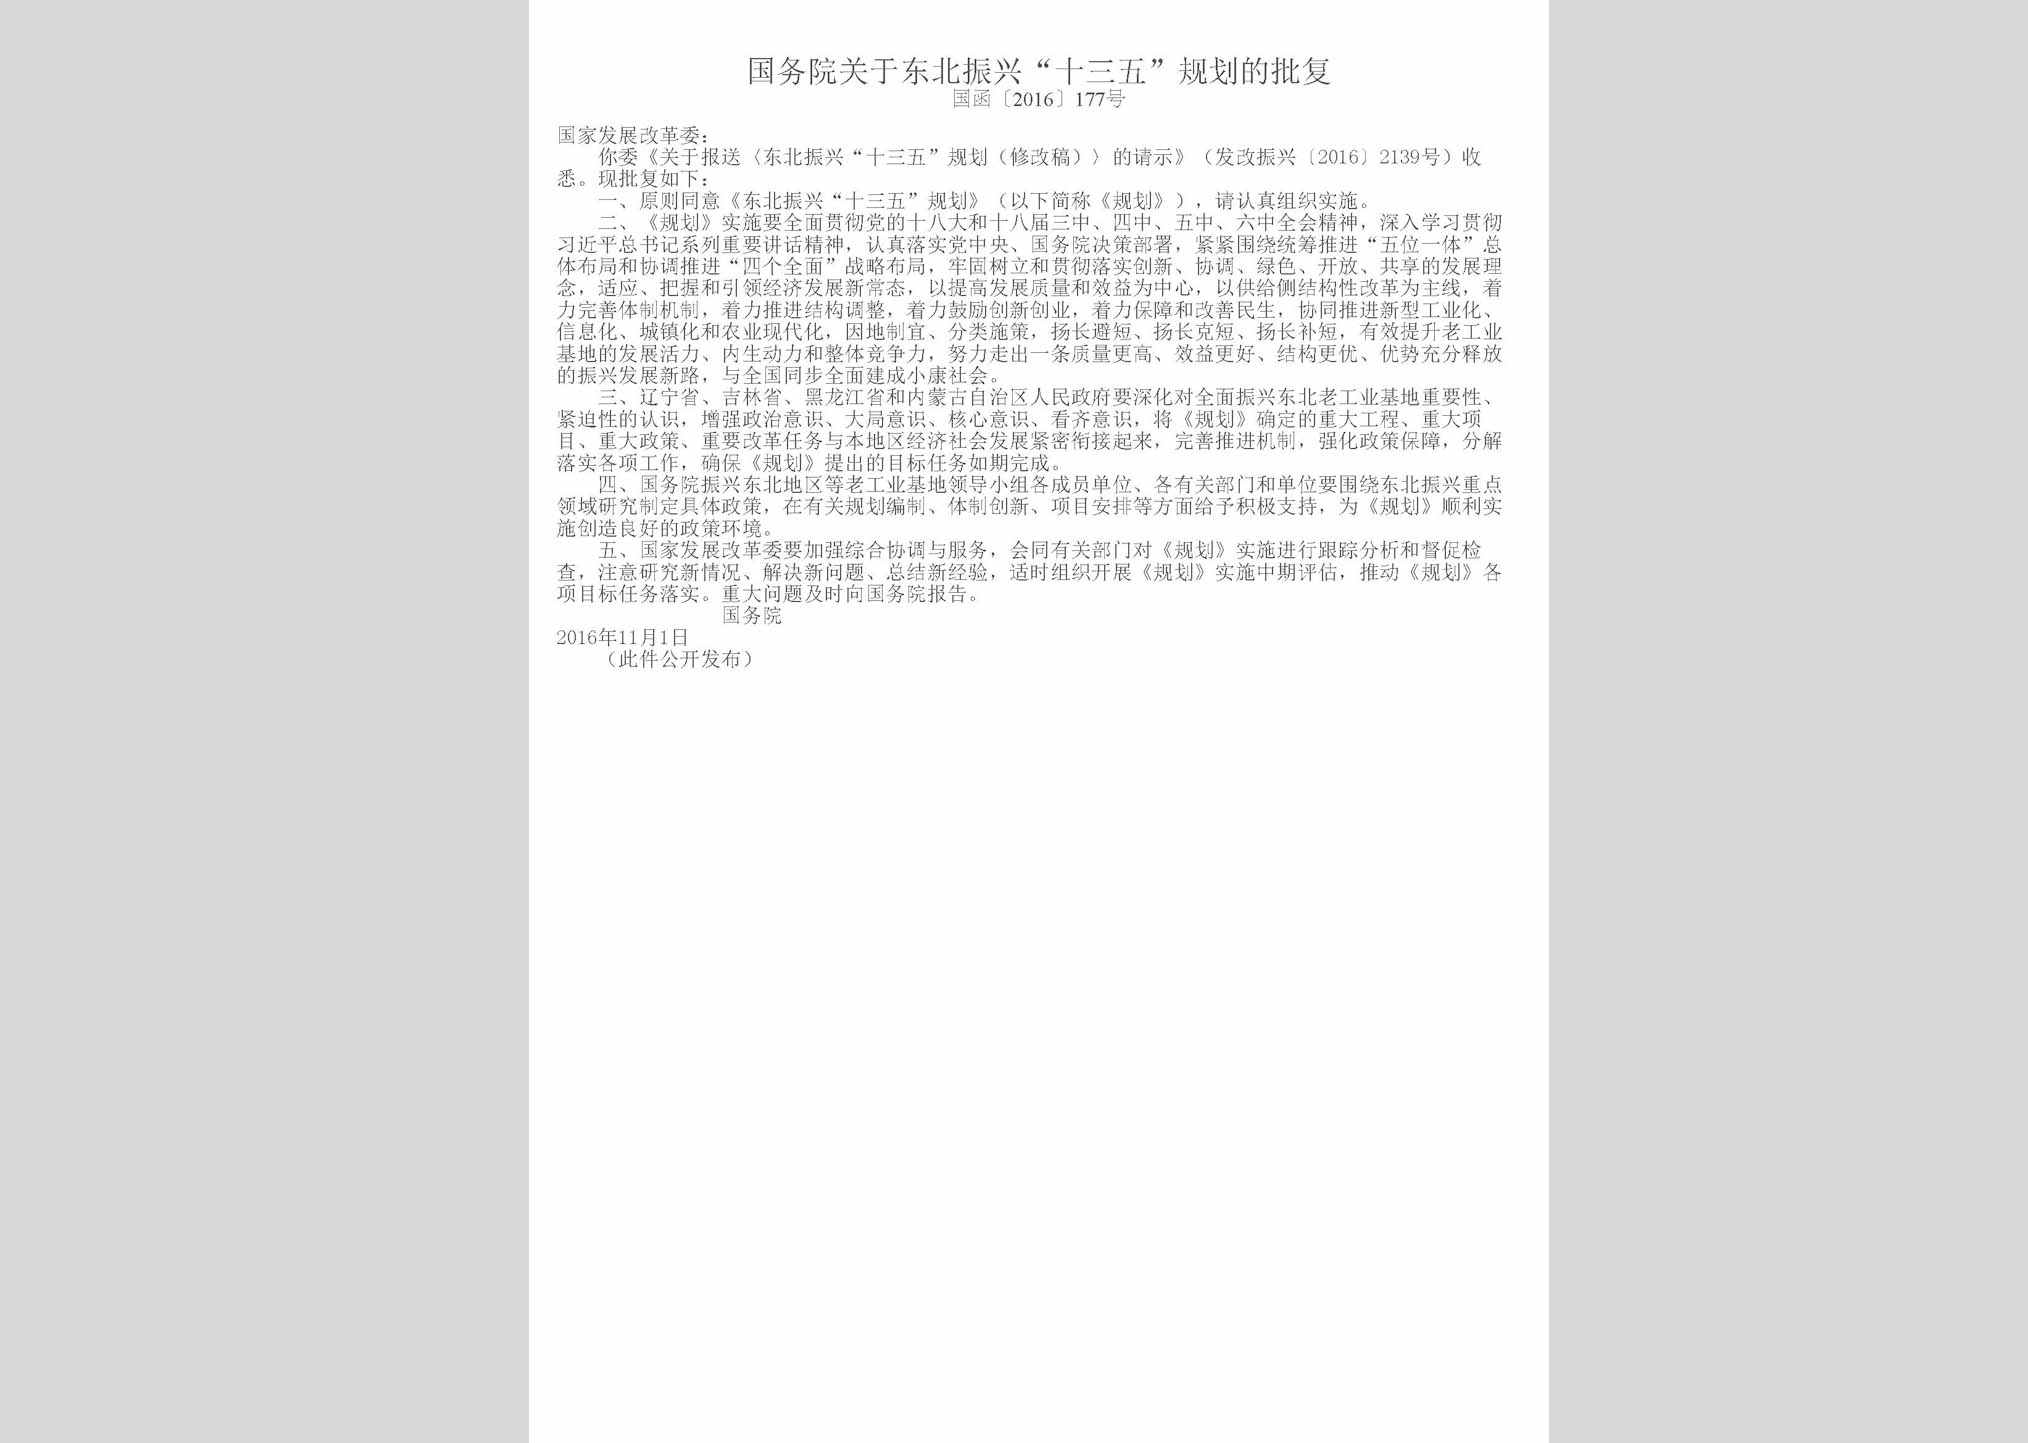 国函[2016]177号：国务院关于东北振兴“十三五”规划的批复